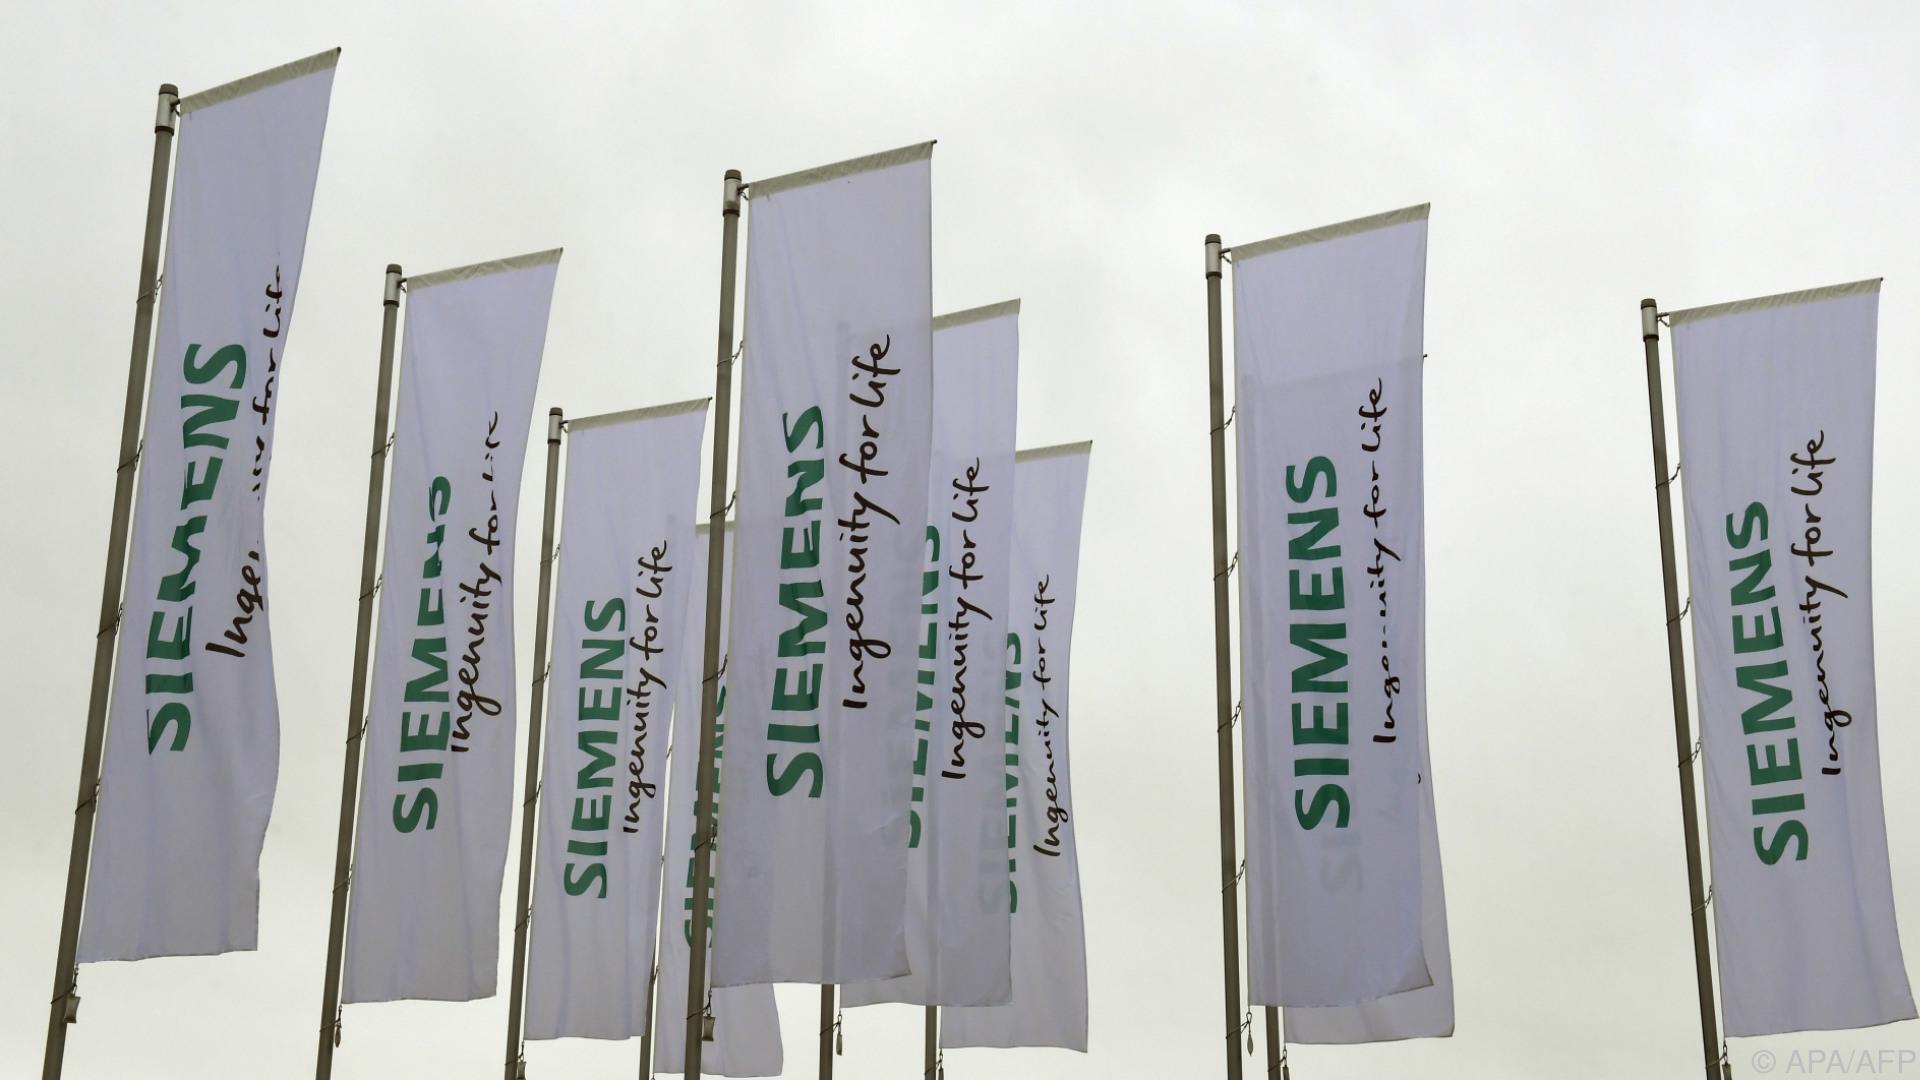 Hauptversammlung entscheidet über Aufspaltung von Siemens